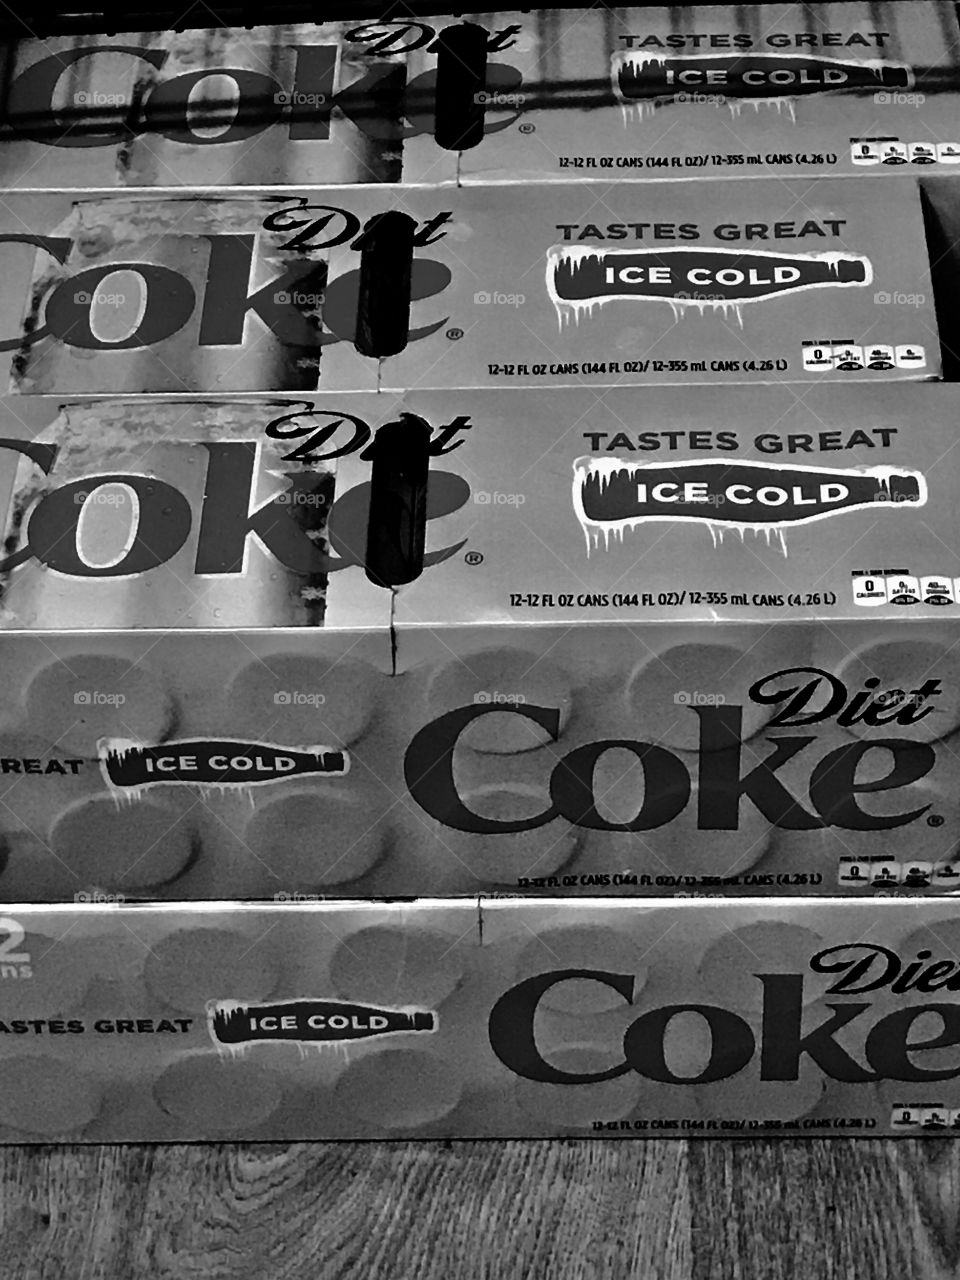 Cases of Coke